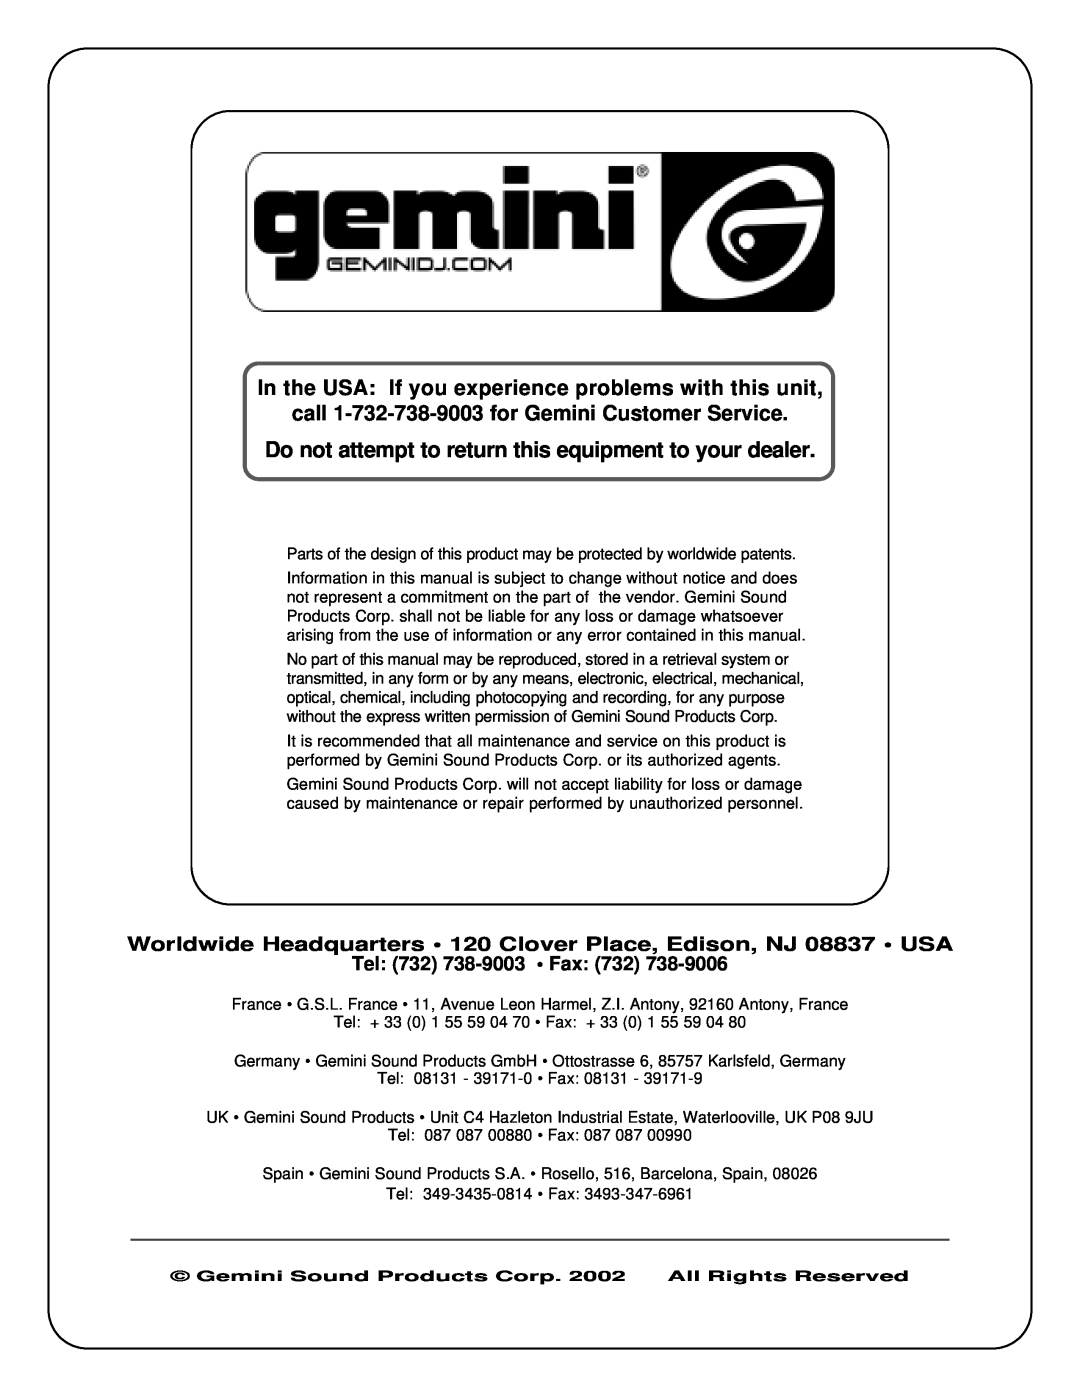 Gemini CD-210 manual call 1-732-738-9003for Gemini Customer Service, Tel 732 738-9003 Fax 